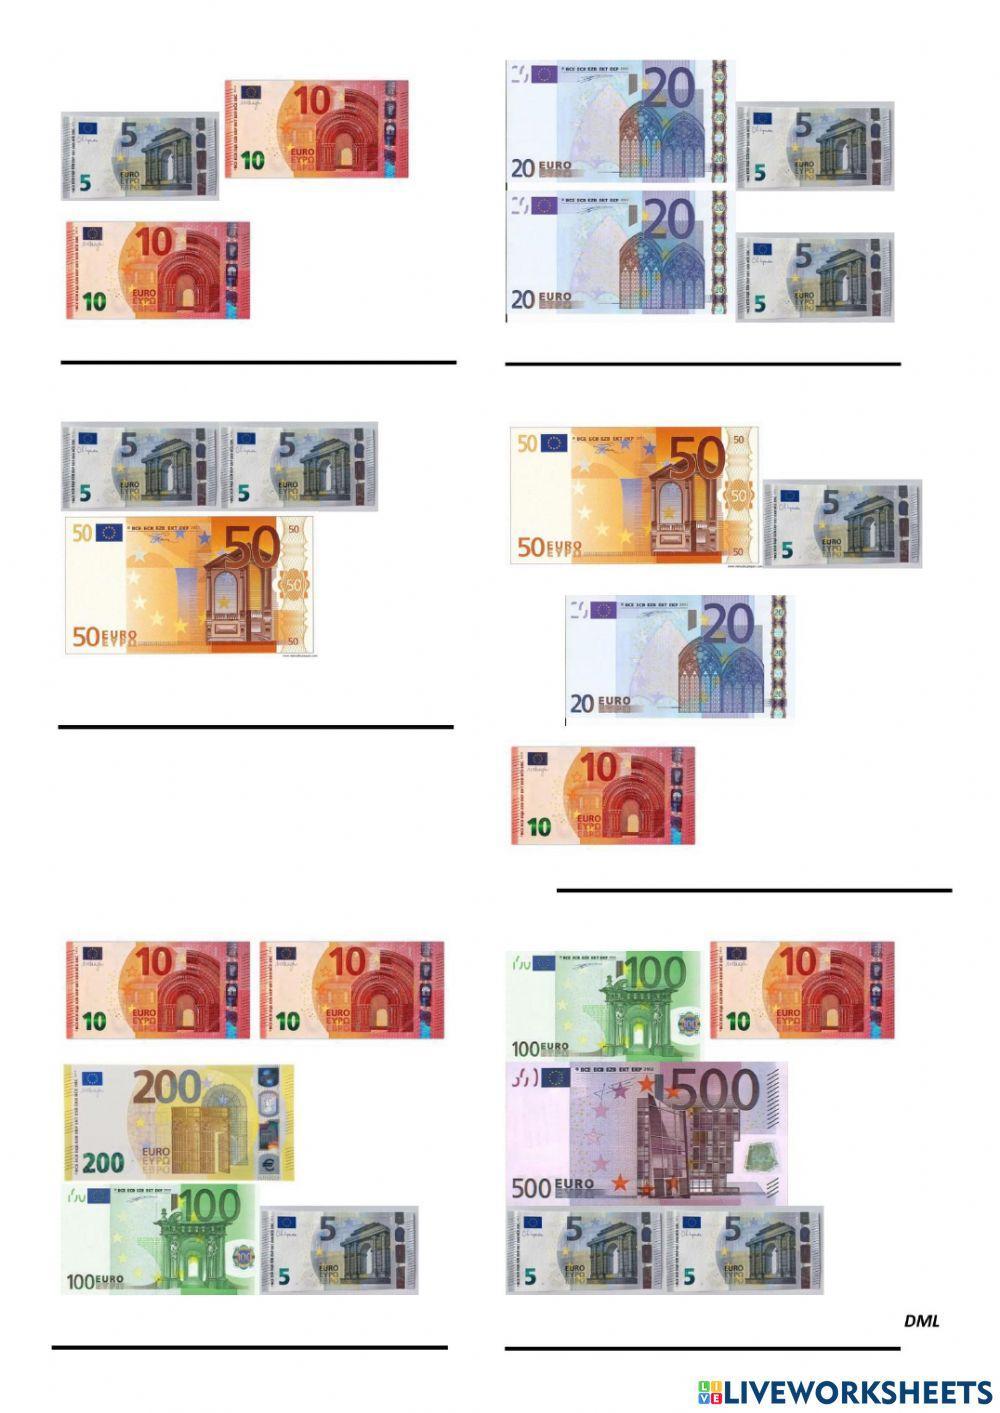 Aprendo los euros (DML)